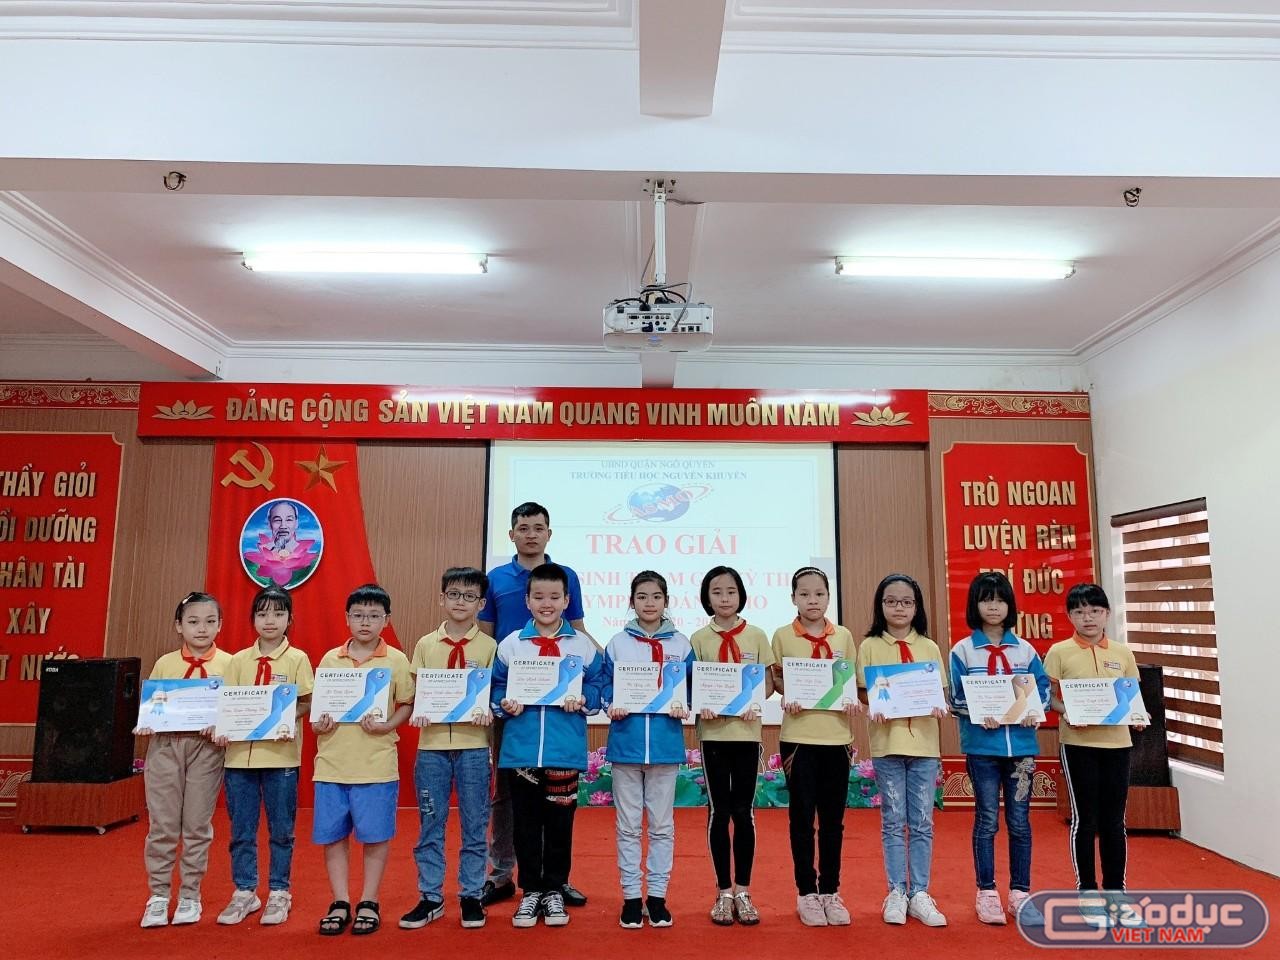 Thầy giáo tổ chức học biển báo giao thông bằng trò chơi cuốn hút các em tiểu học - Giáo dục Việt Nam